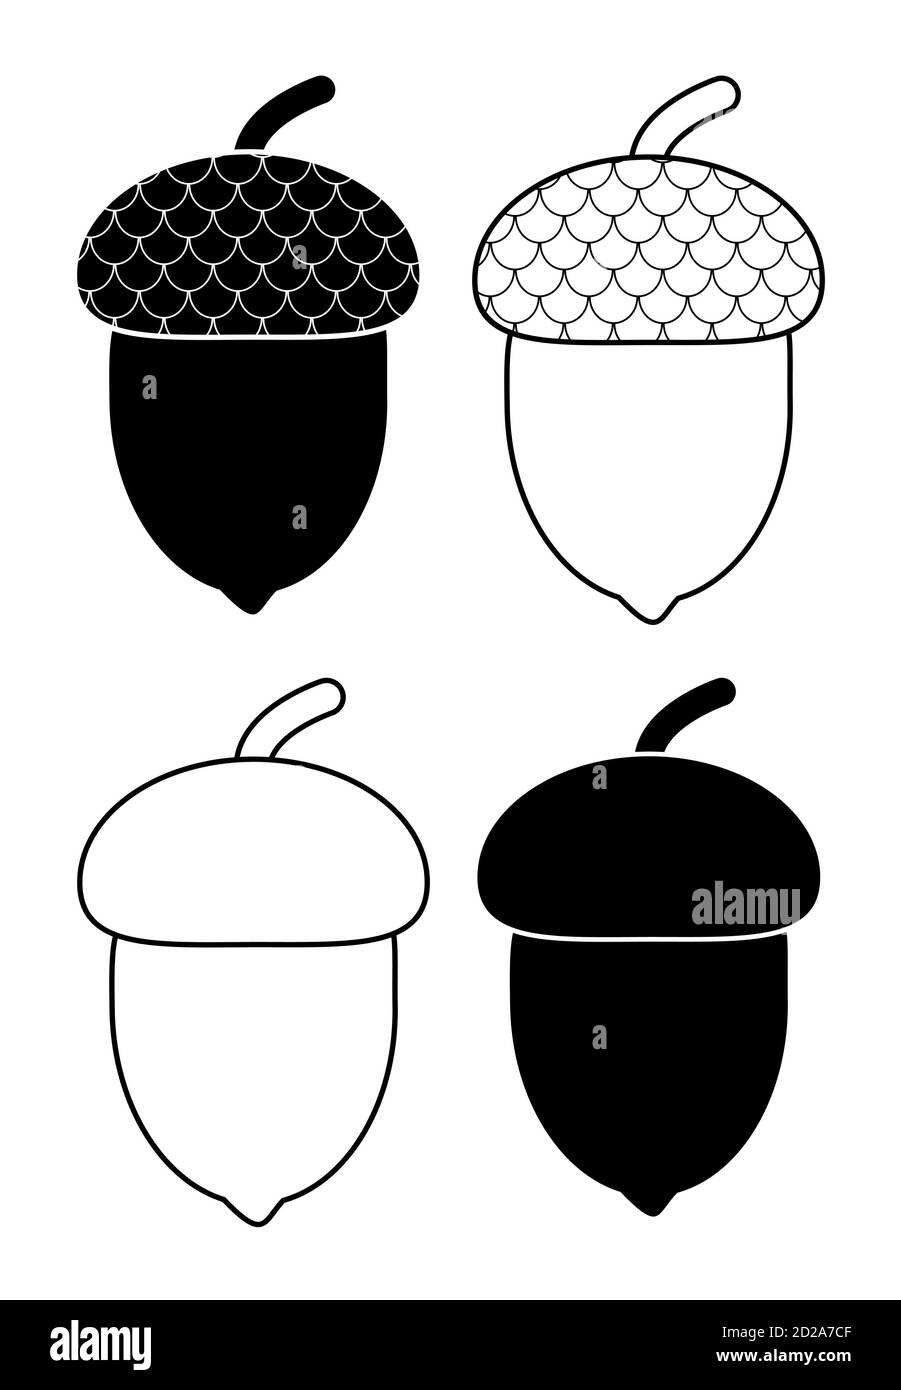 Elementi di design autunnali con profilo e profilo Acorn isolati su bianco. Illustrazionof frutti di quercia con tappi. Rovere bianco e nero accorni wi Illustrazione Vettoriale